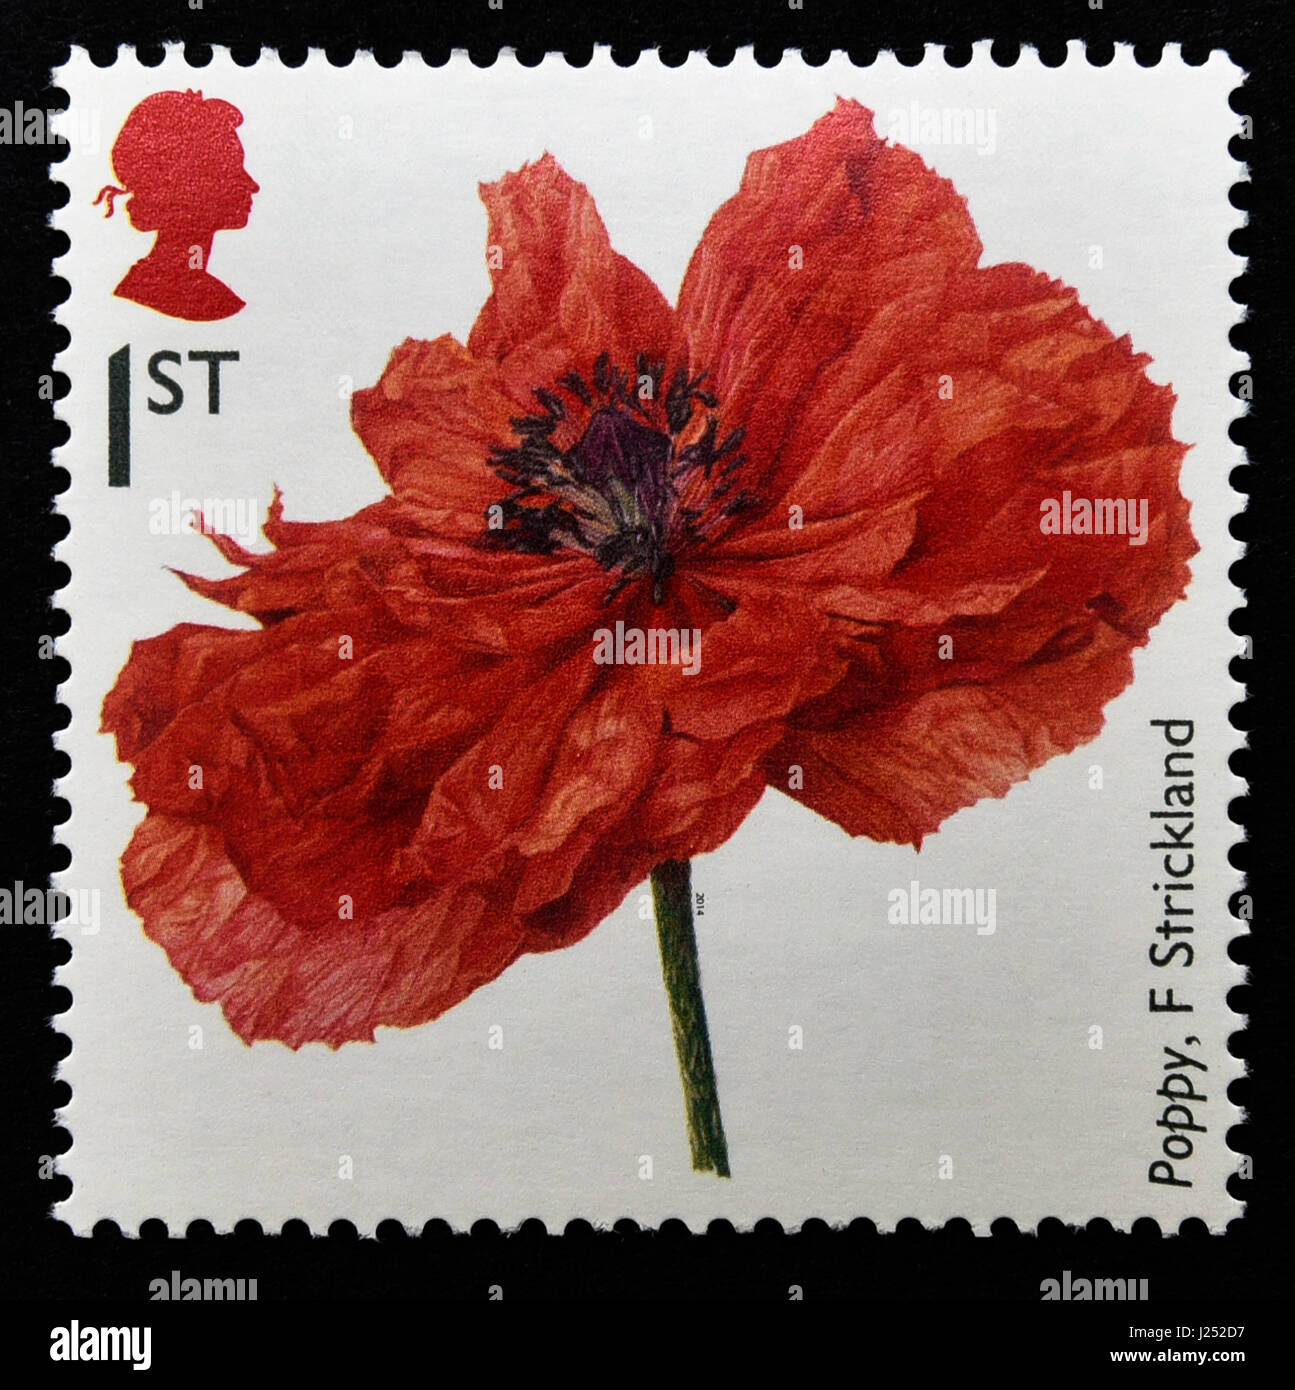 Briefmarke. Great Britain. Königin Elizabeth II. 2014. des ersten Weltkriegs 1914 Souvenirs. Mohn von Fiona Strickland. Stockfoto